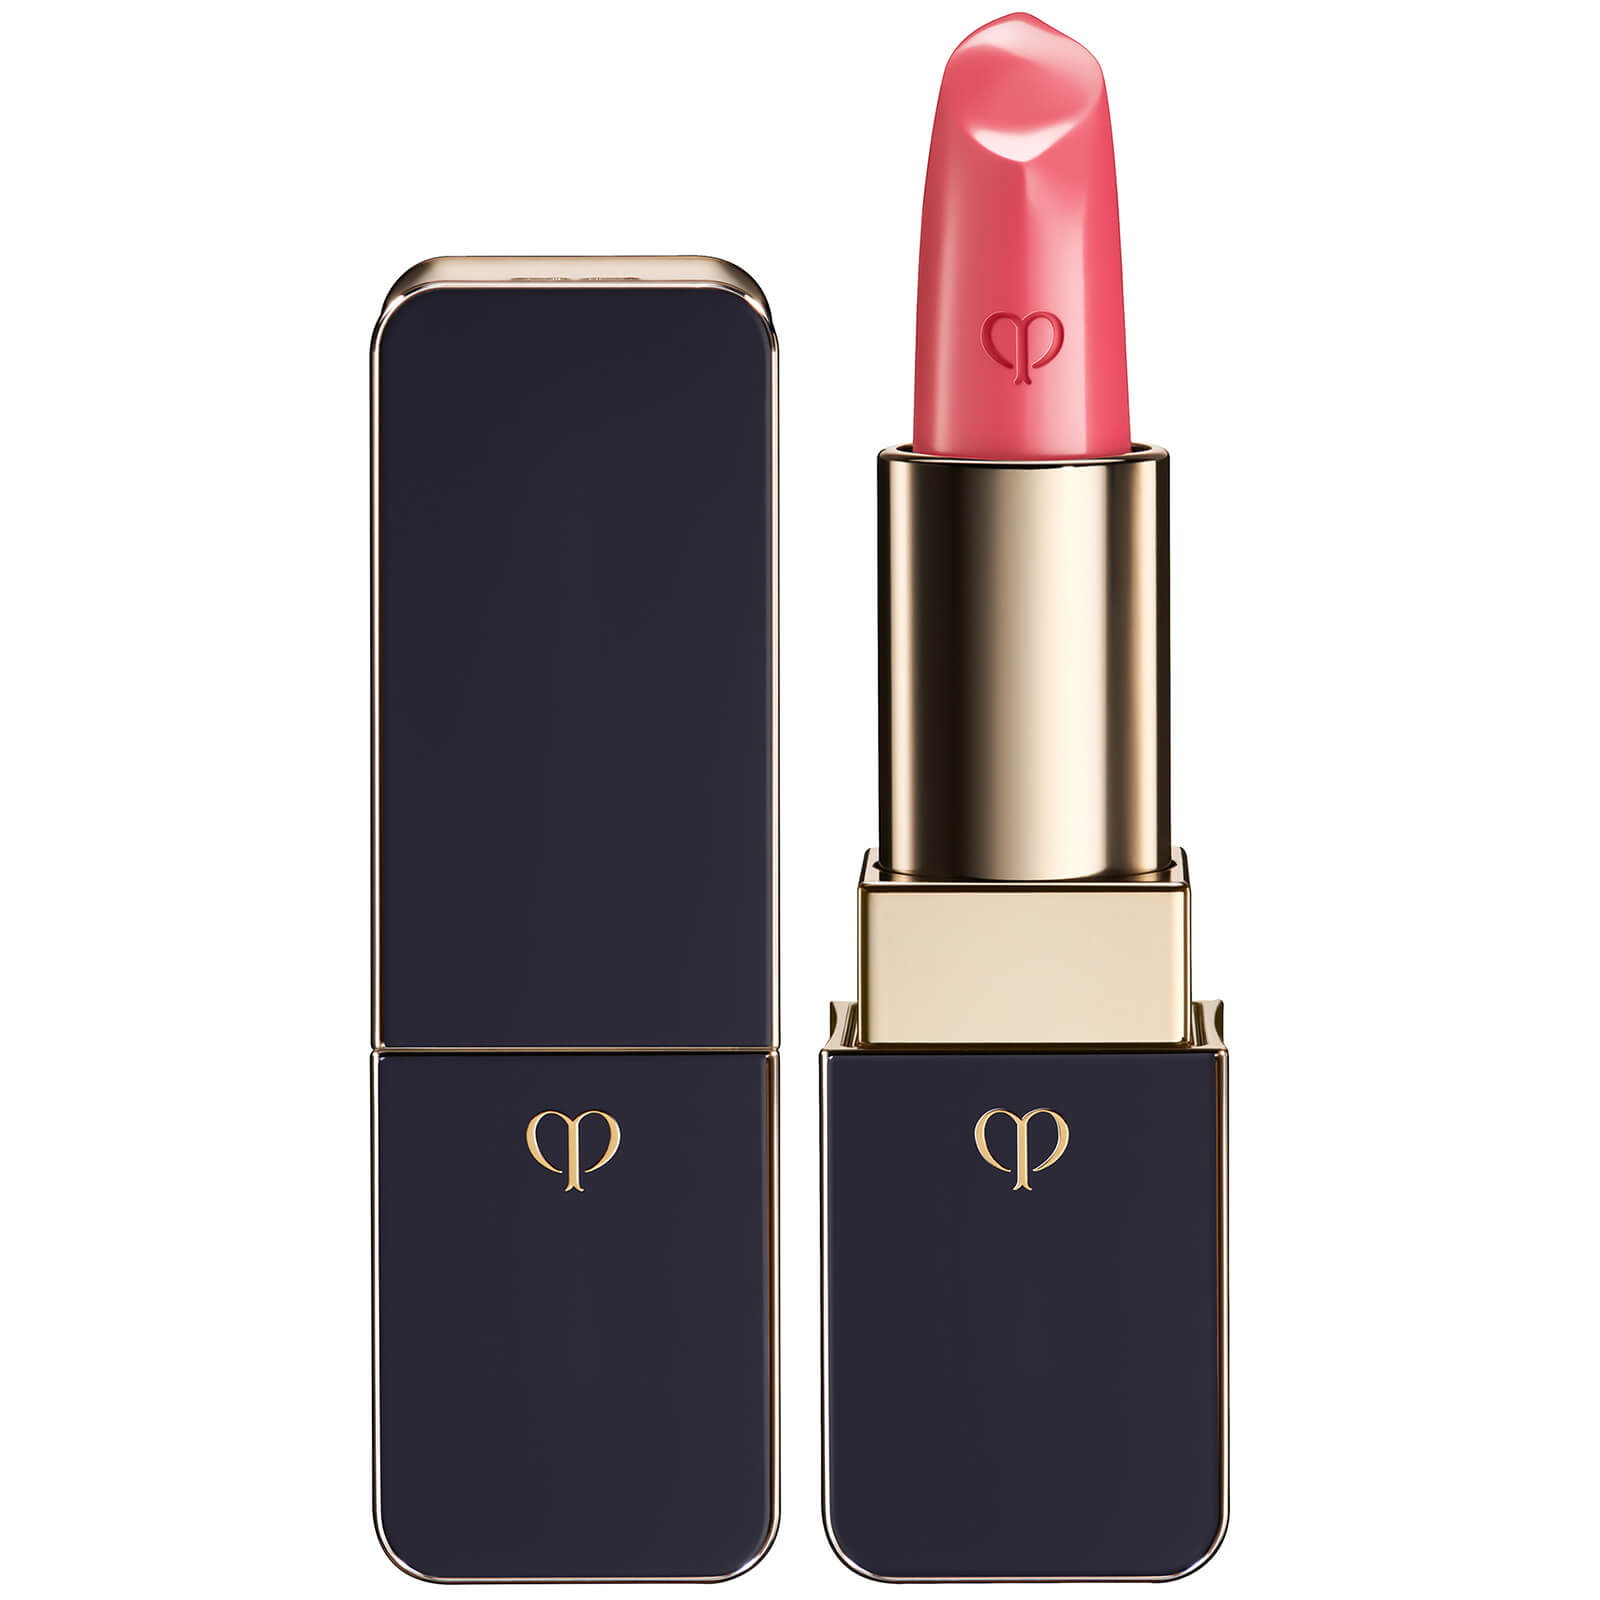 Cle de Peau Beaute Lipstick (Various Shades) - 15 - A Flair for Fuchsia